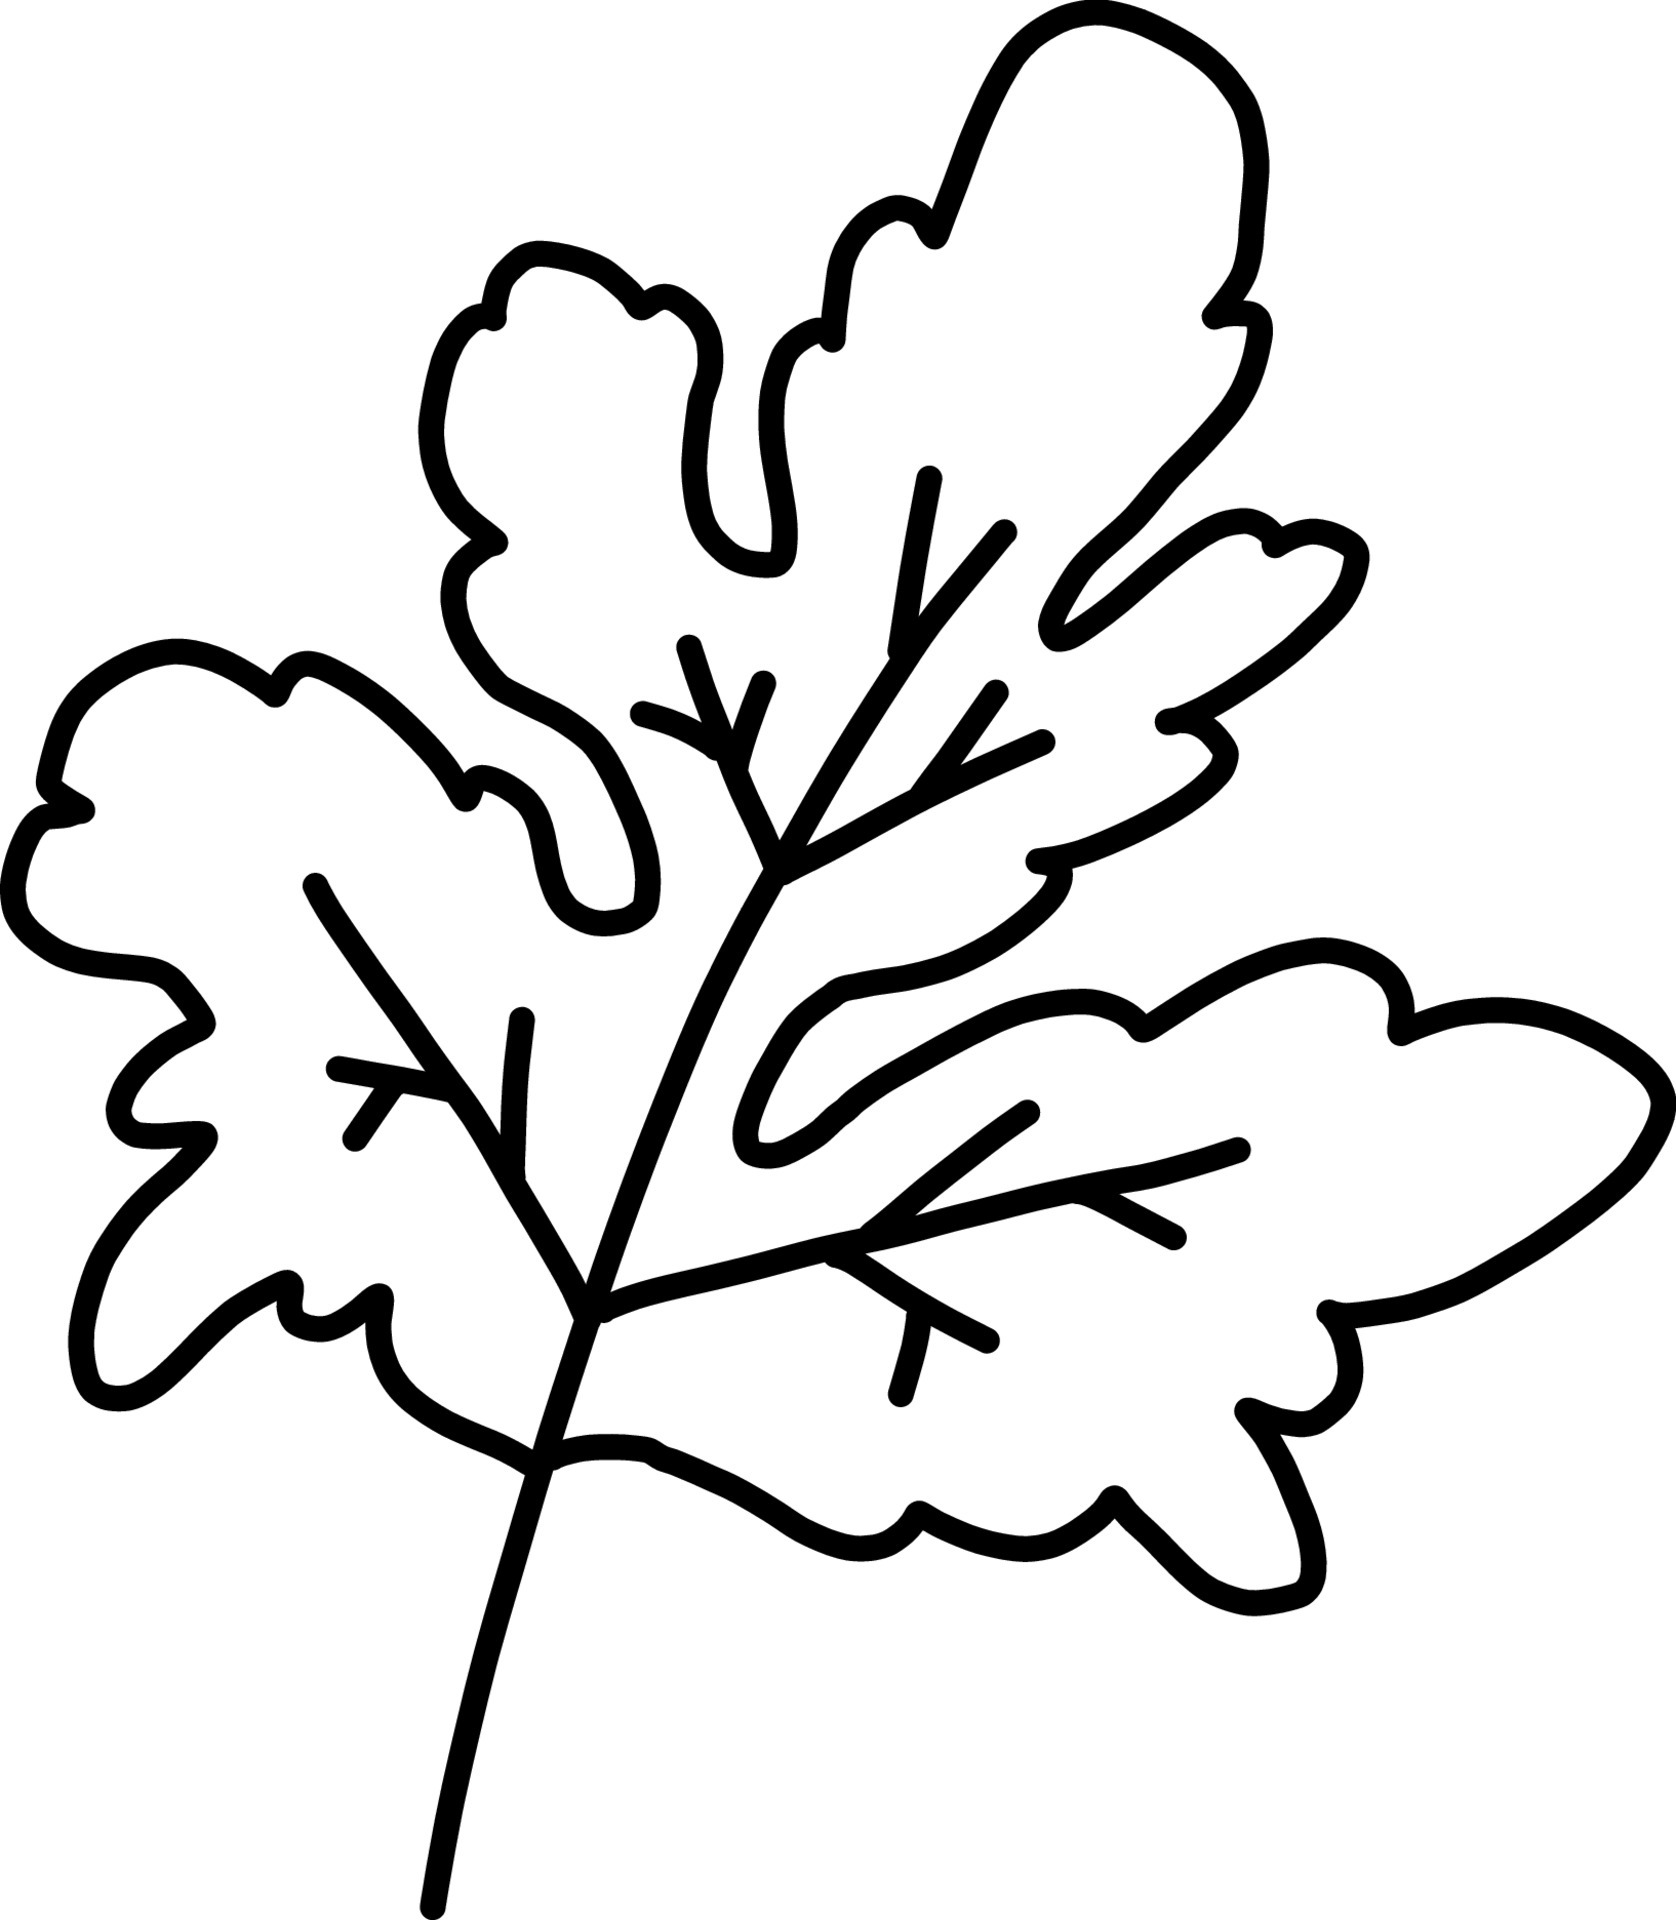 Composição Plana Dos Vegetais Dos Desenhos Animados Royalty Free SVG,  Cliparts, Vetores, e Ilustrações Stock. Image 191724393